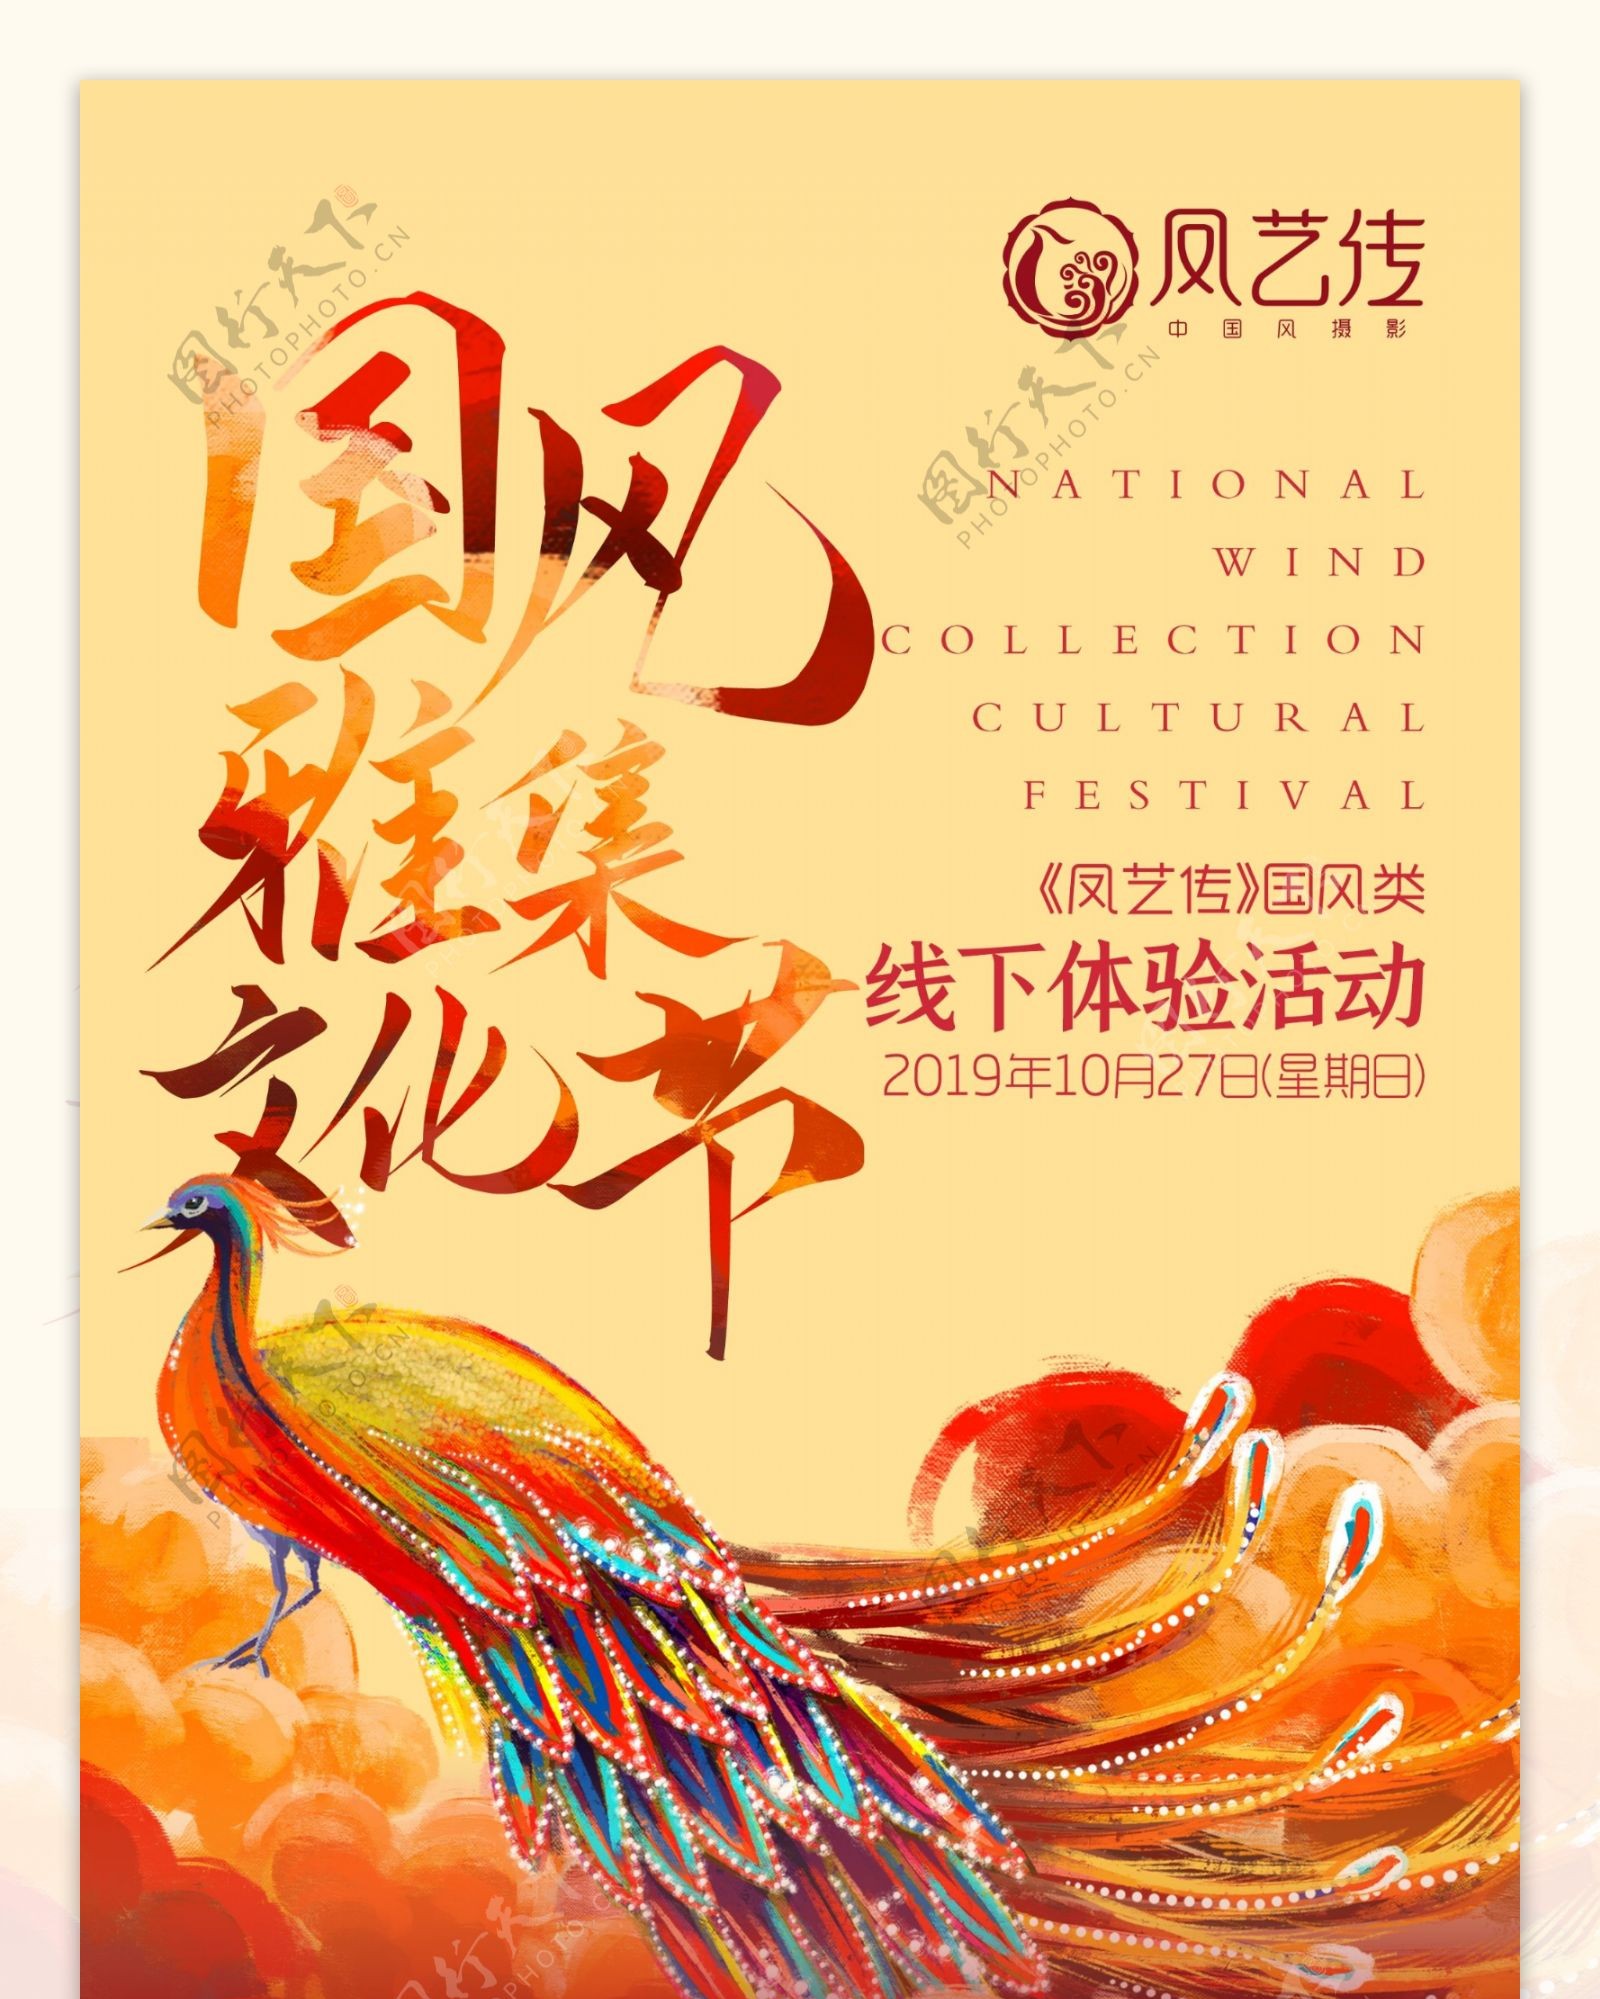 国风雅集文化节